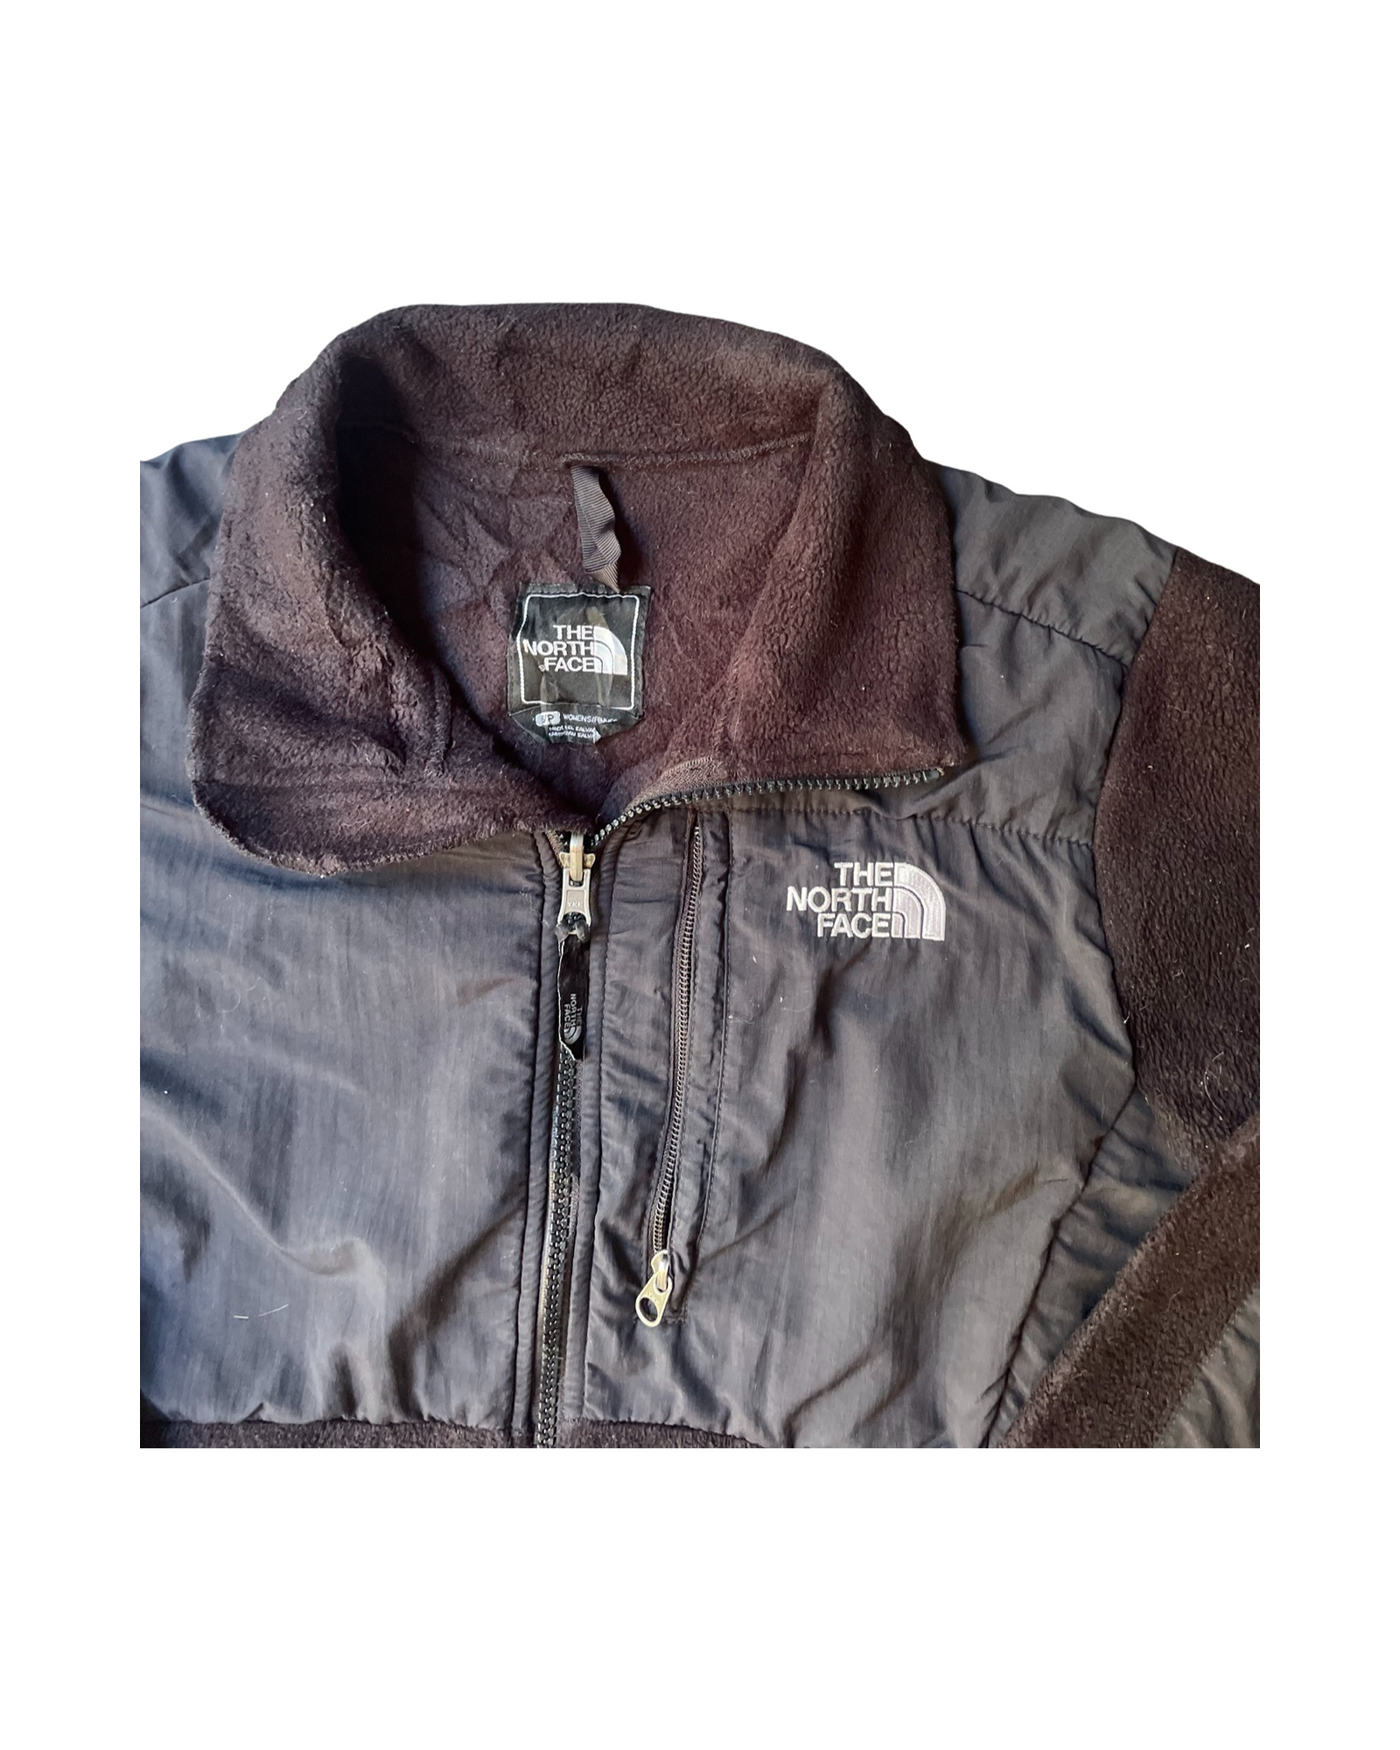 Vintage 90’s North Face Fleece Jacket